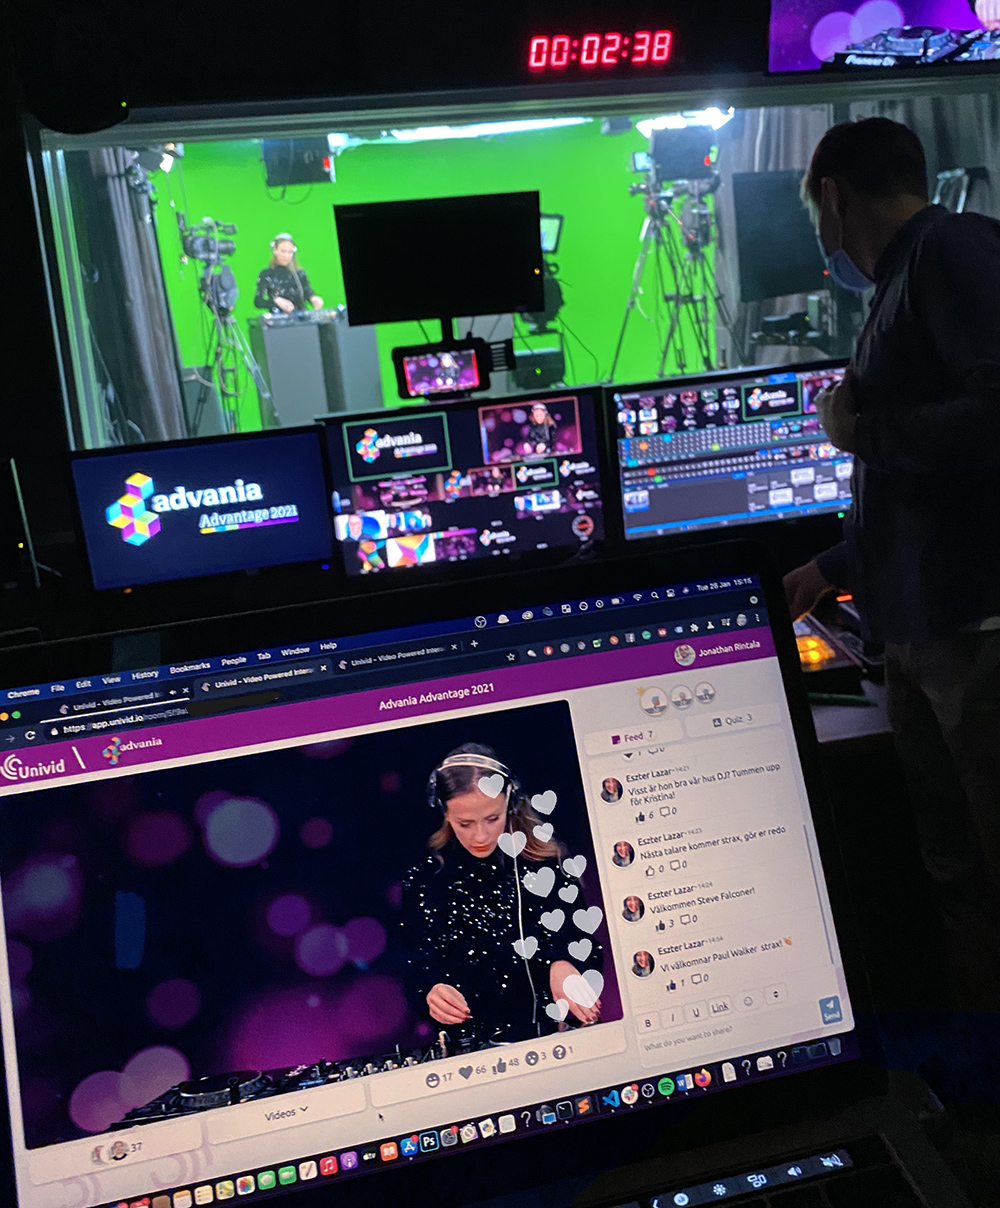 Ett digitalt studioevent med Advania - Advantage 2021 - livesändes på Univid med frågesport, chatt, emojis och digital quiz. Fantastisk livemusik med DJ Kristina i Twenty Studios green screen studio.